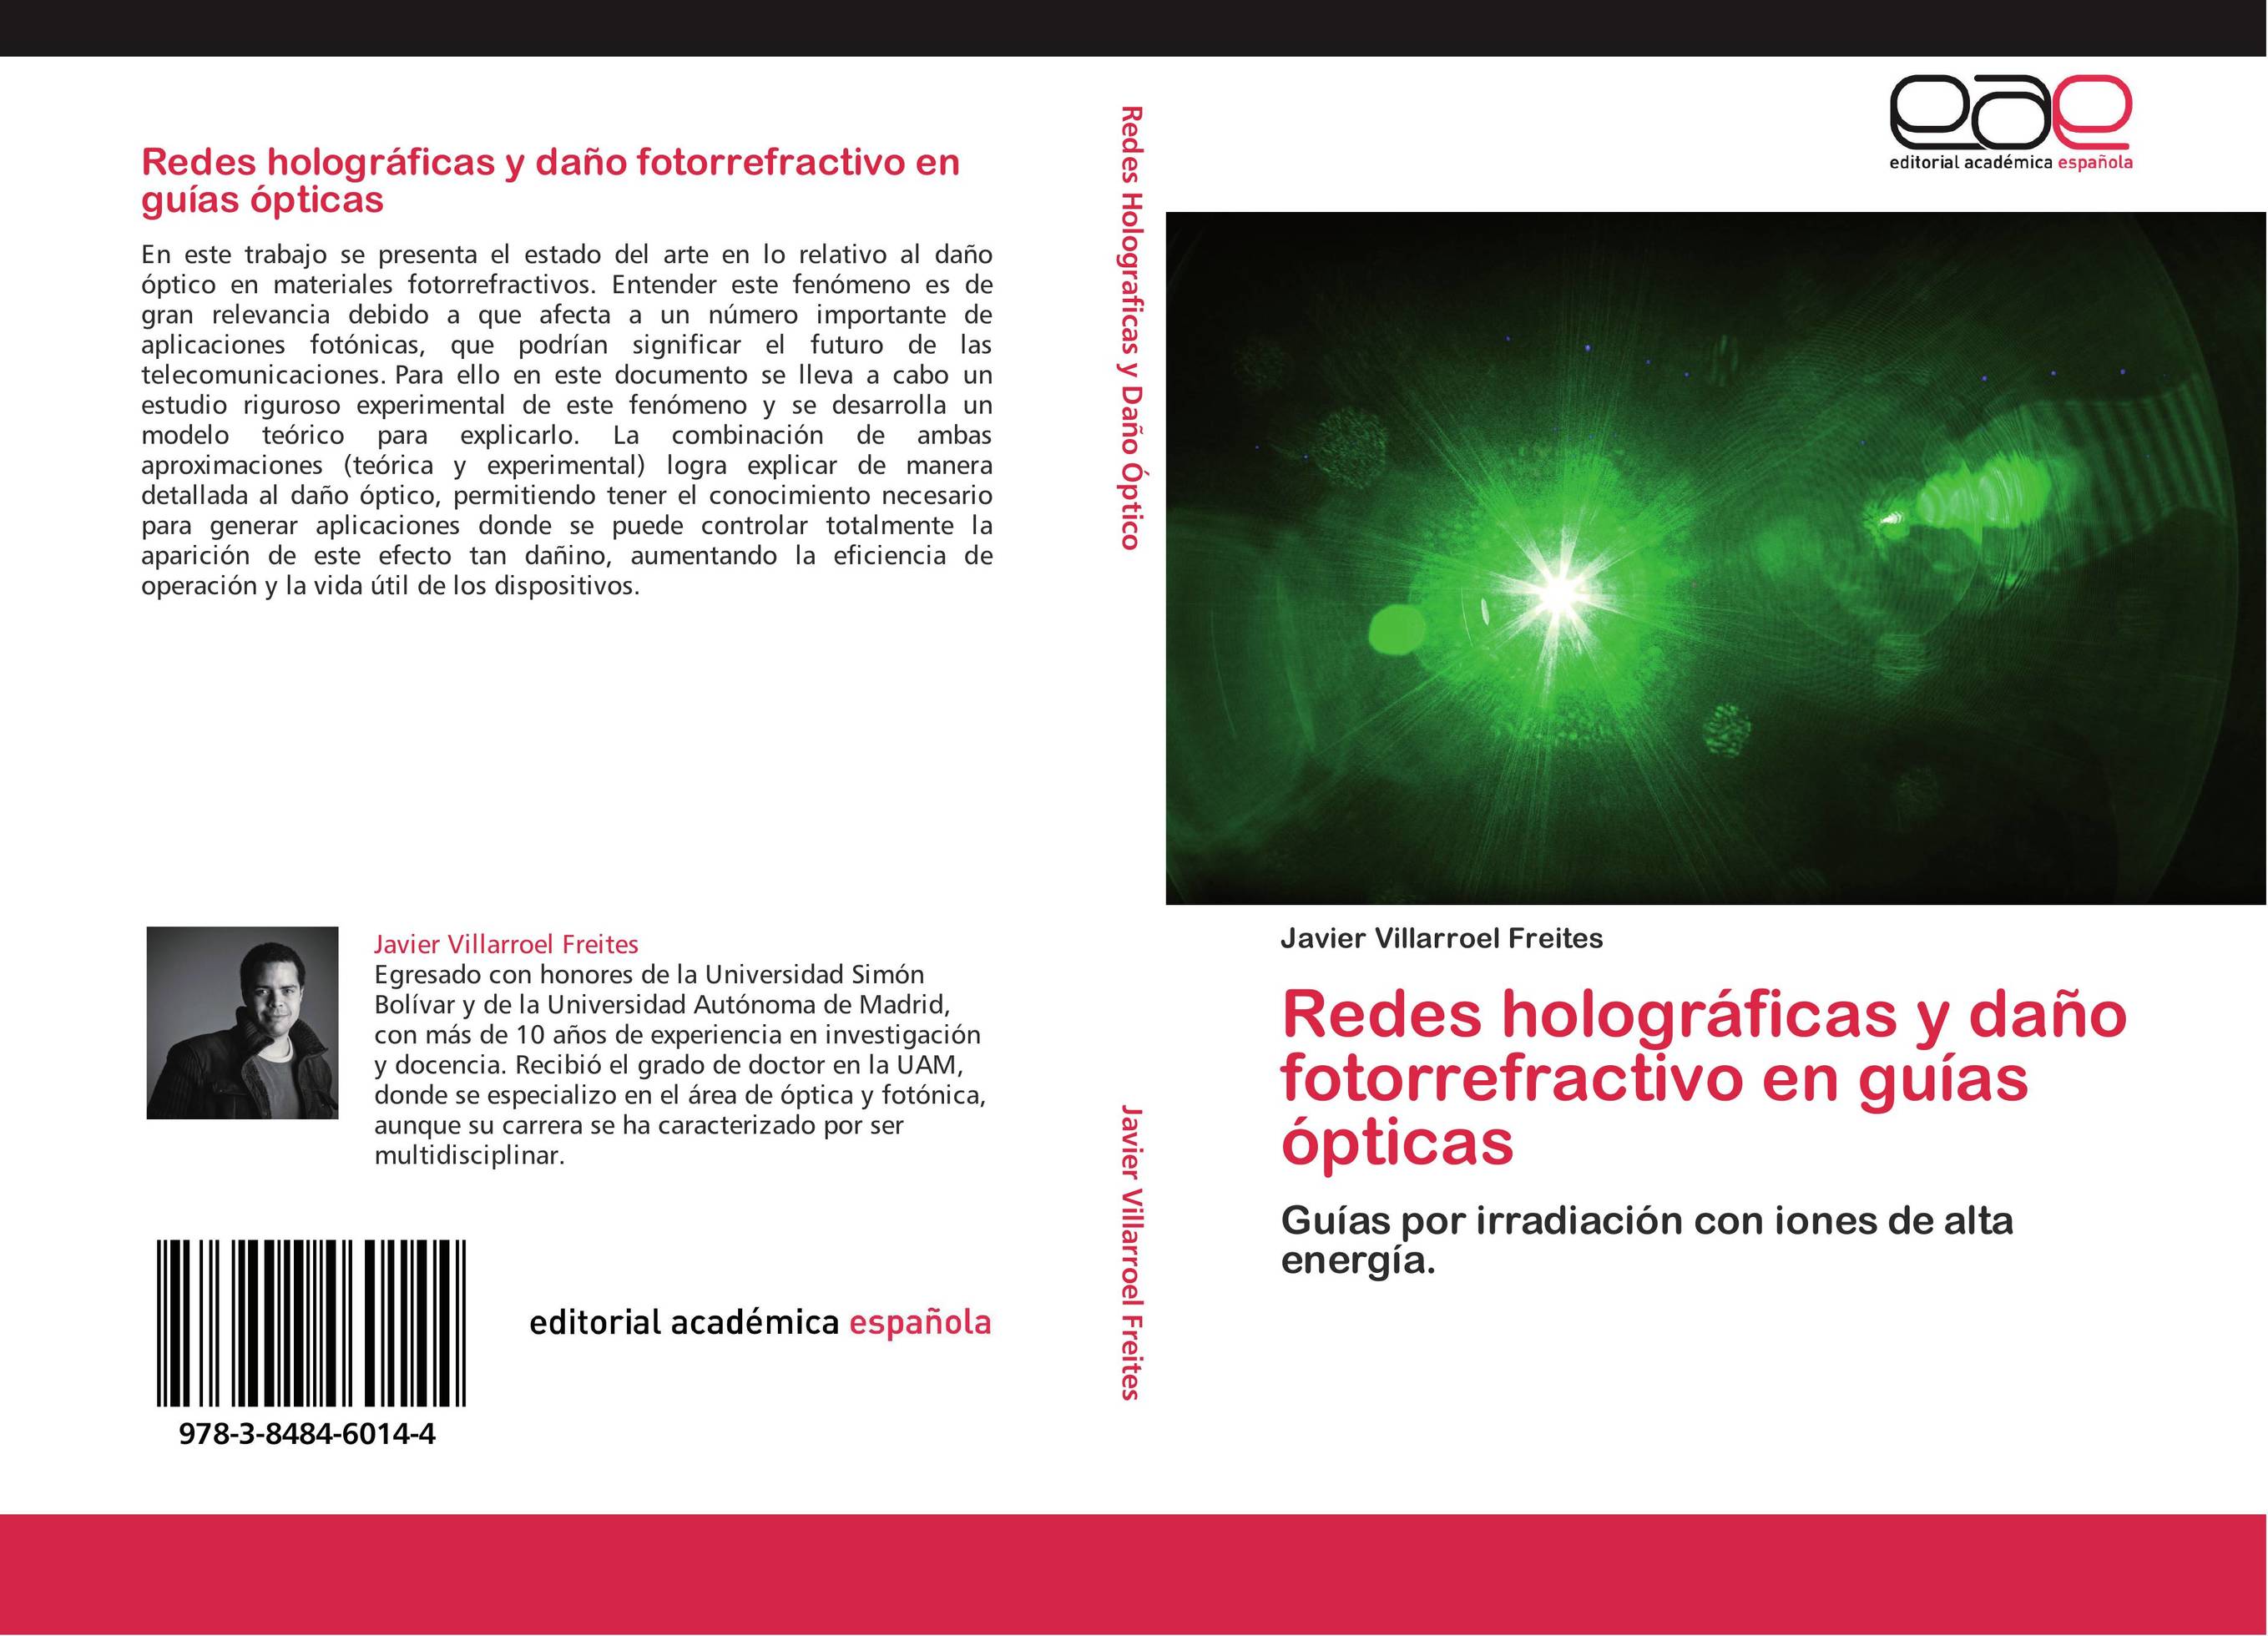 Redes holográficas y daño fotorrefractivo en guías ópticas